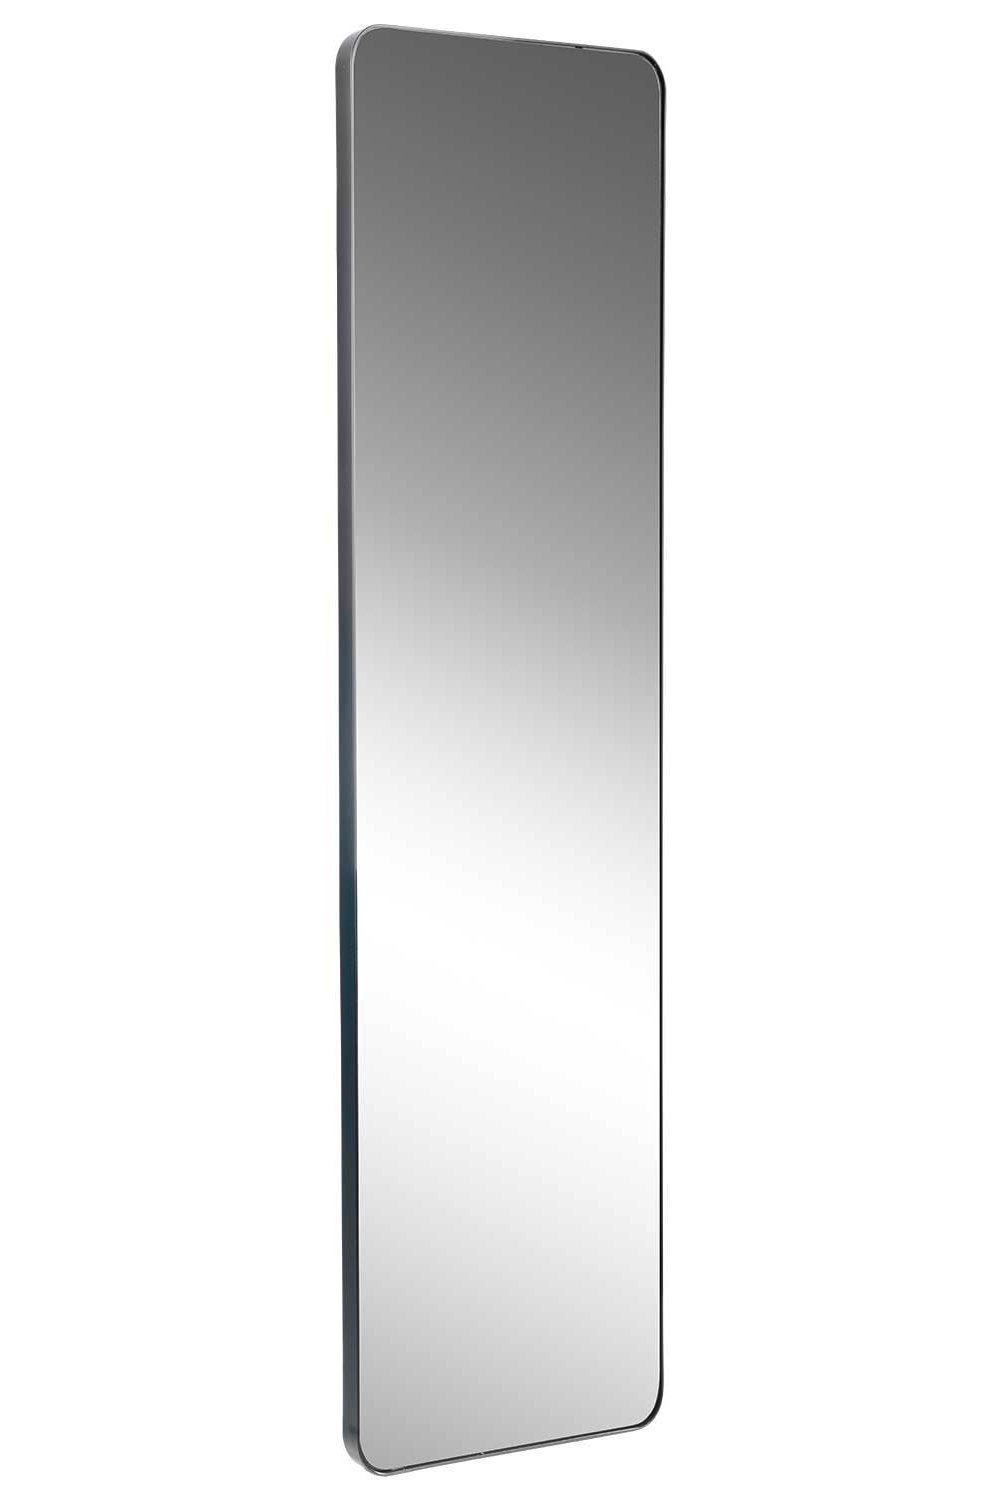 Home4You Spiegel TAINA, B 30 x H 150 cm, Rahmen in Schwarz, Metall, lackierte Rahmenoberfläche